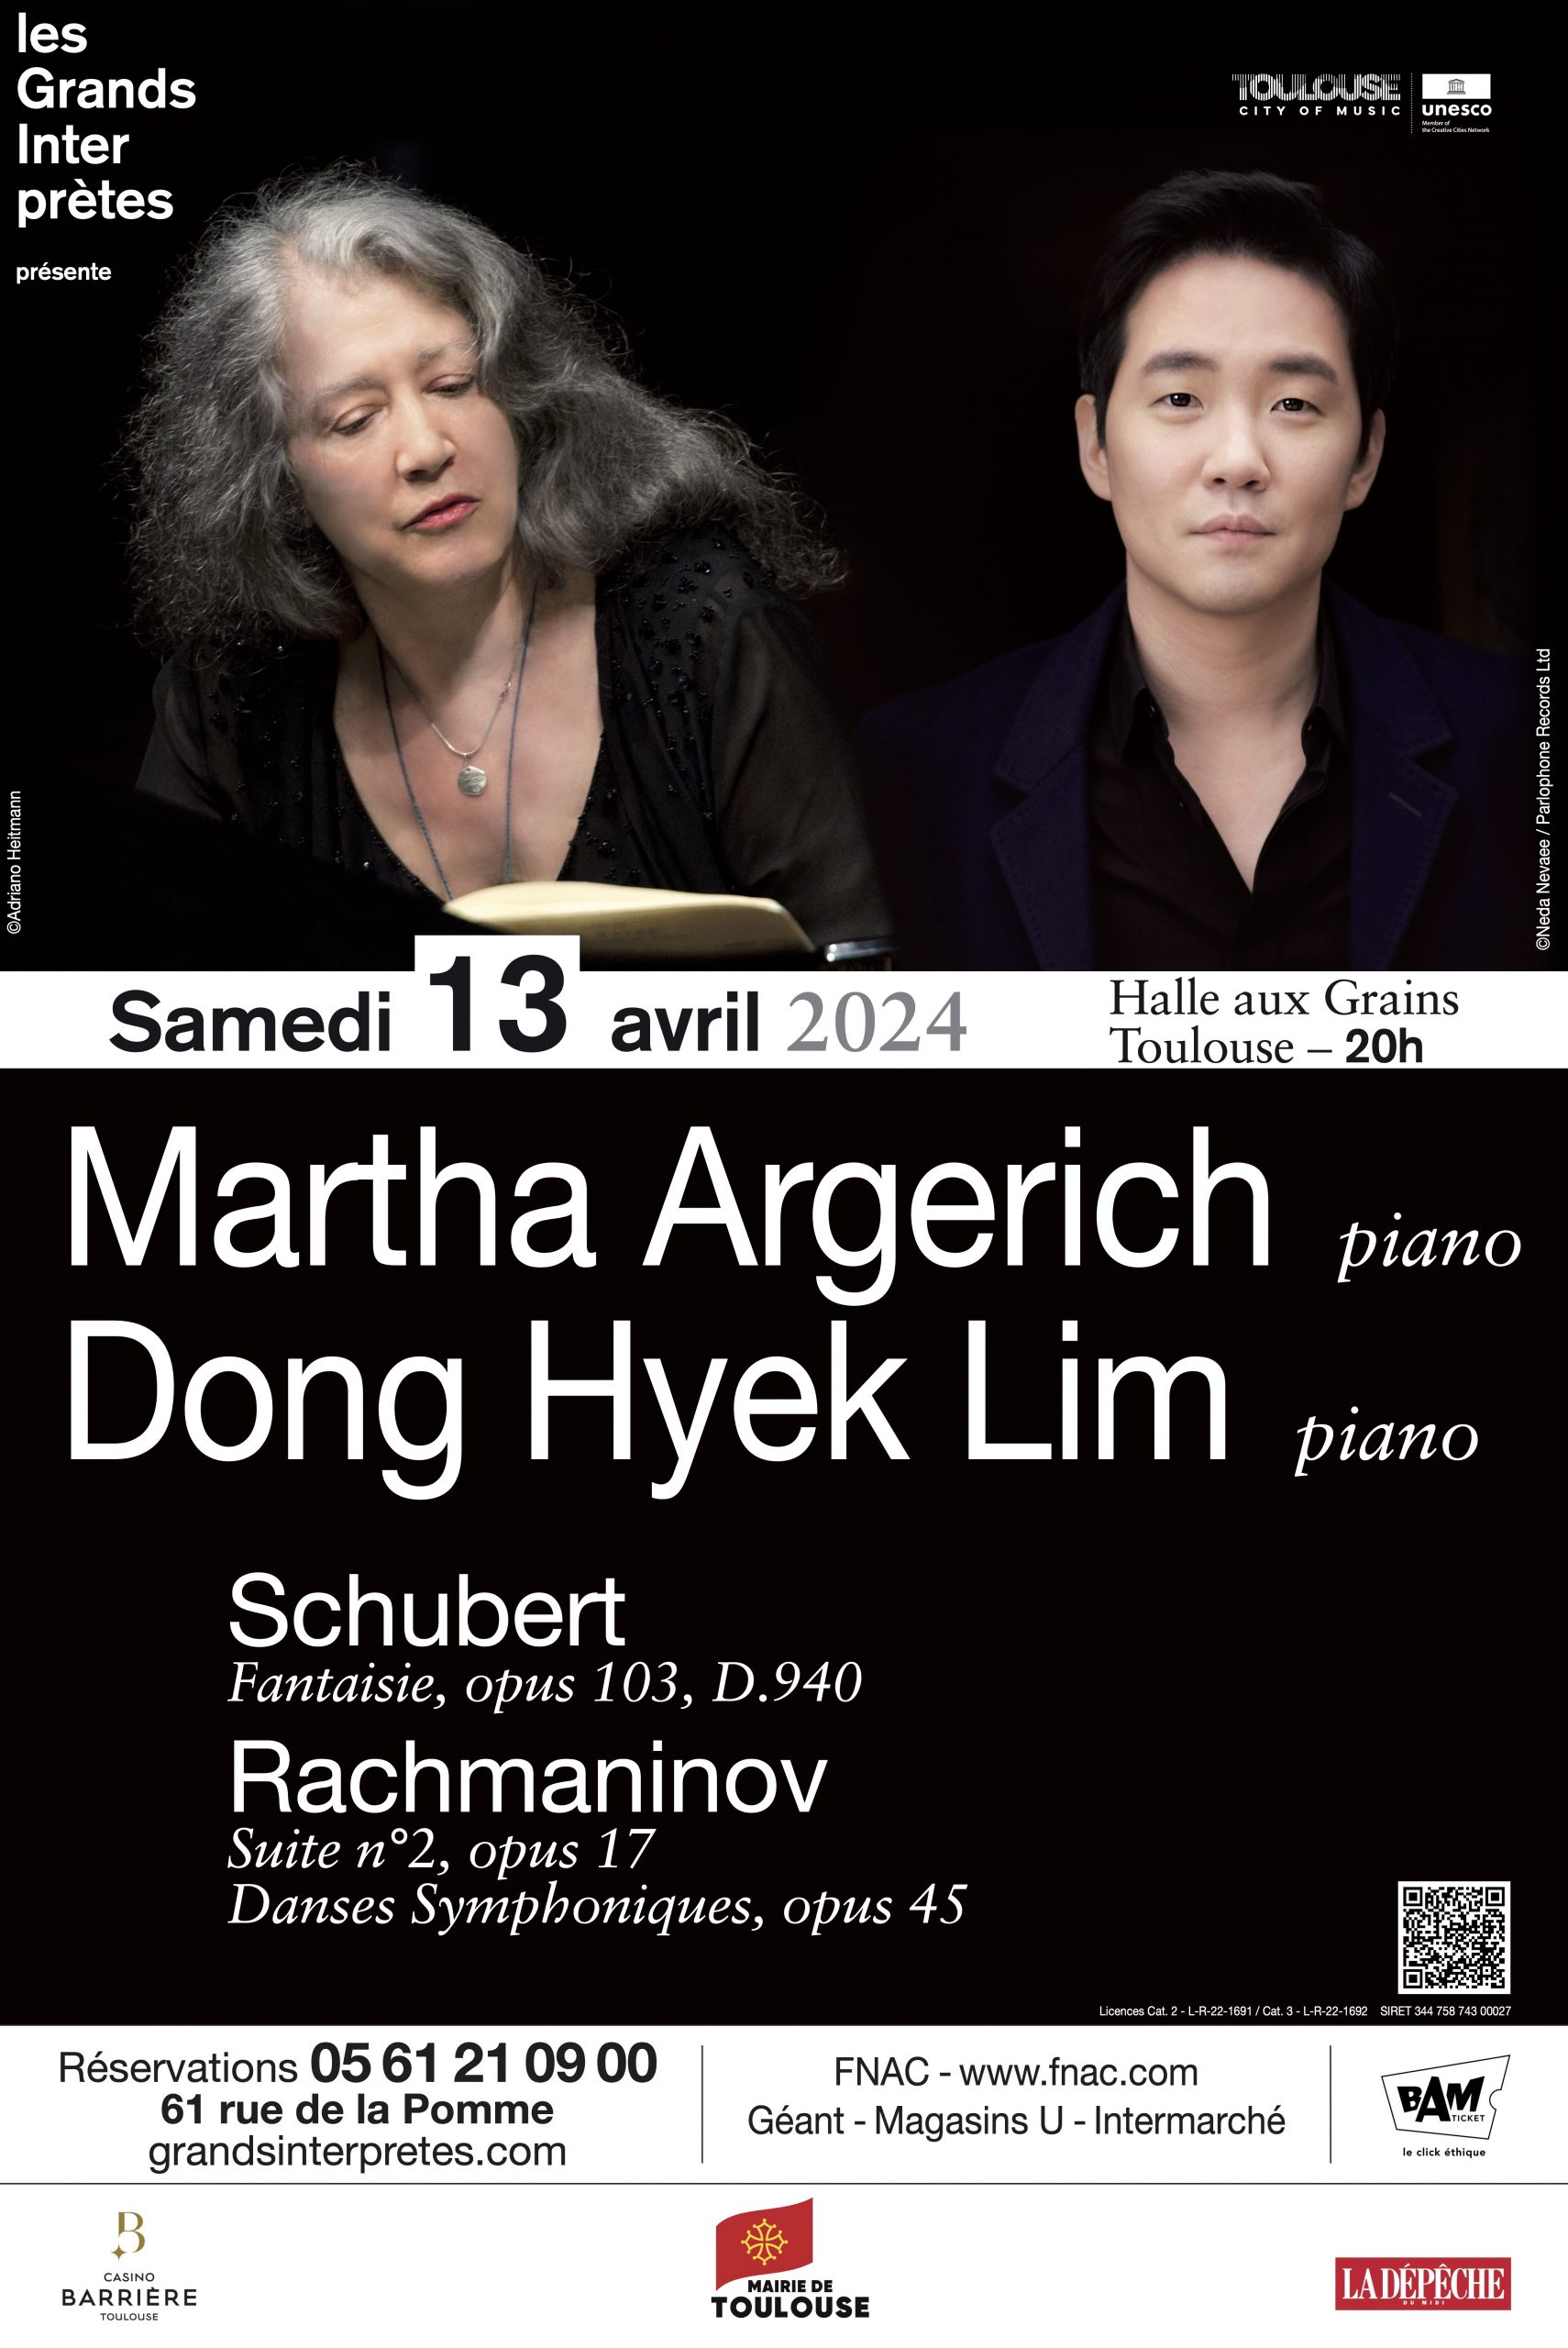 Les Grands Interprètes Martha Argerich Et Dong Hyek Lim